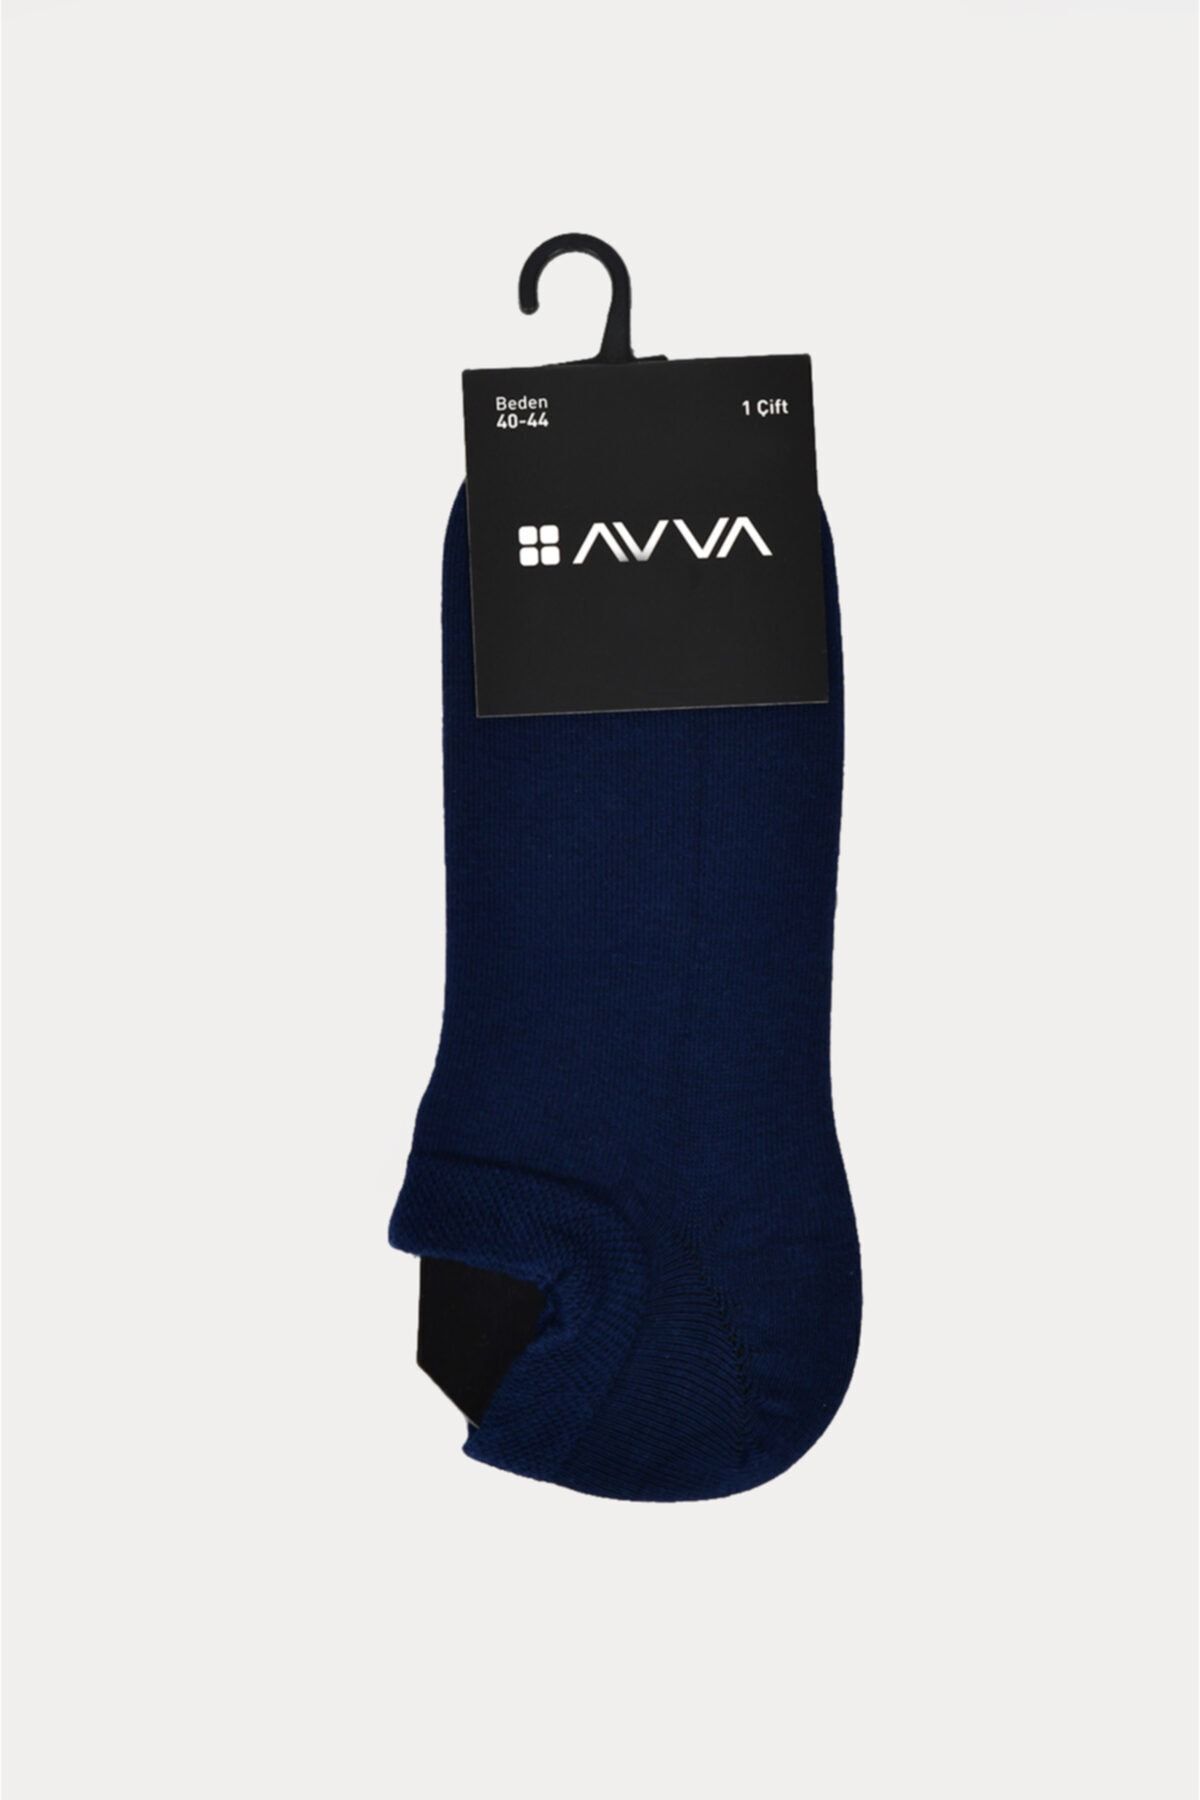 Avva Erkek Lacivert Soket Çorap A01y8502